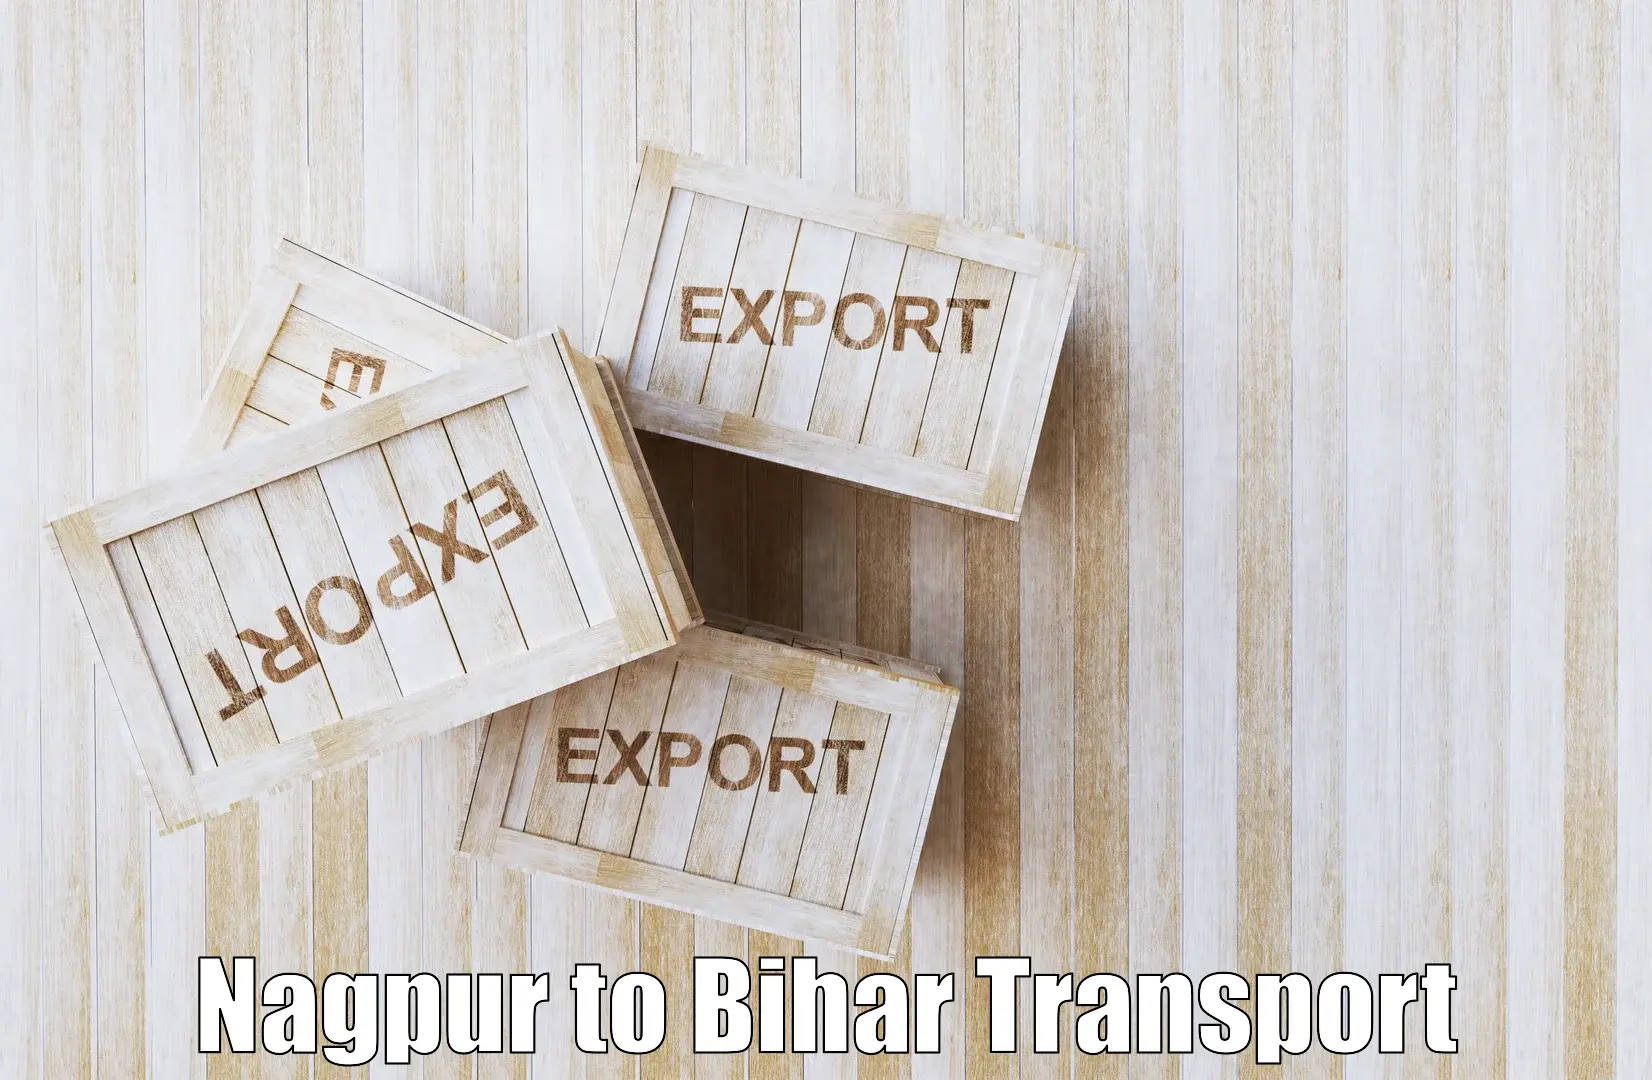 Express transport services Nagpur to Bihar